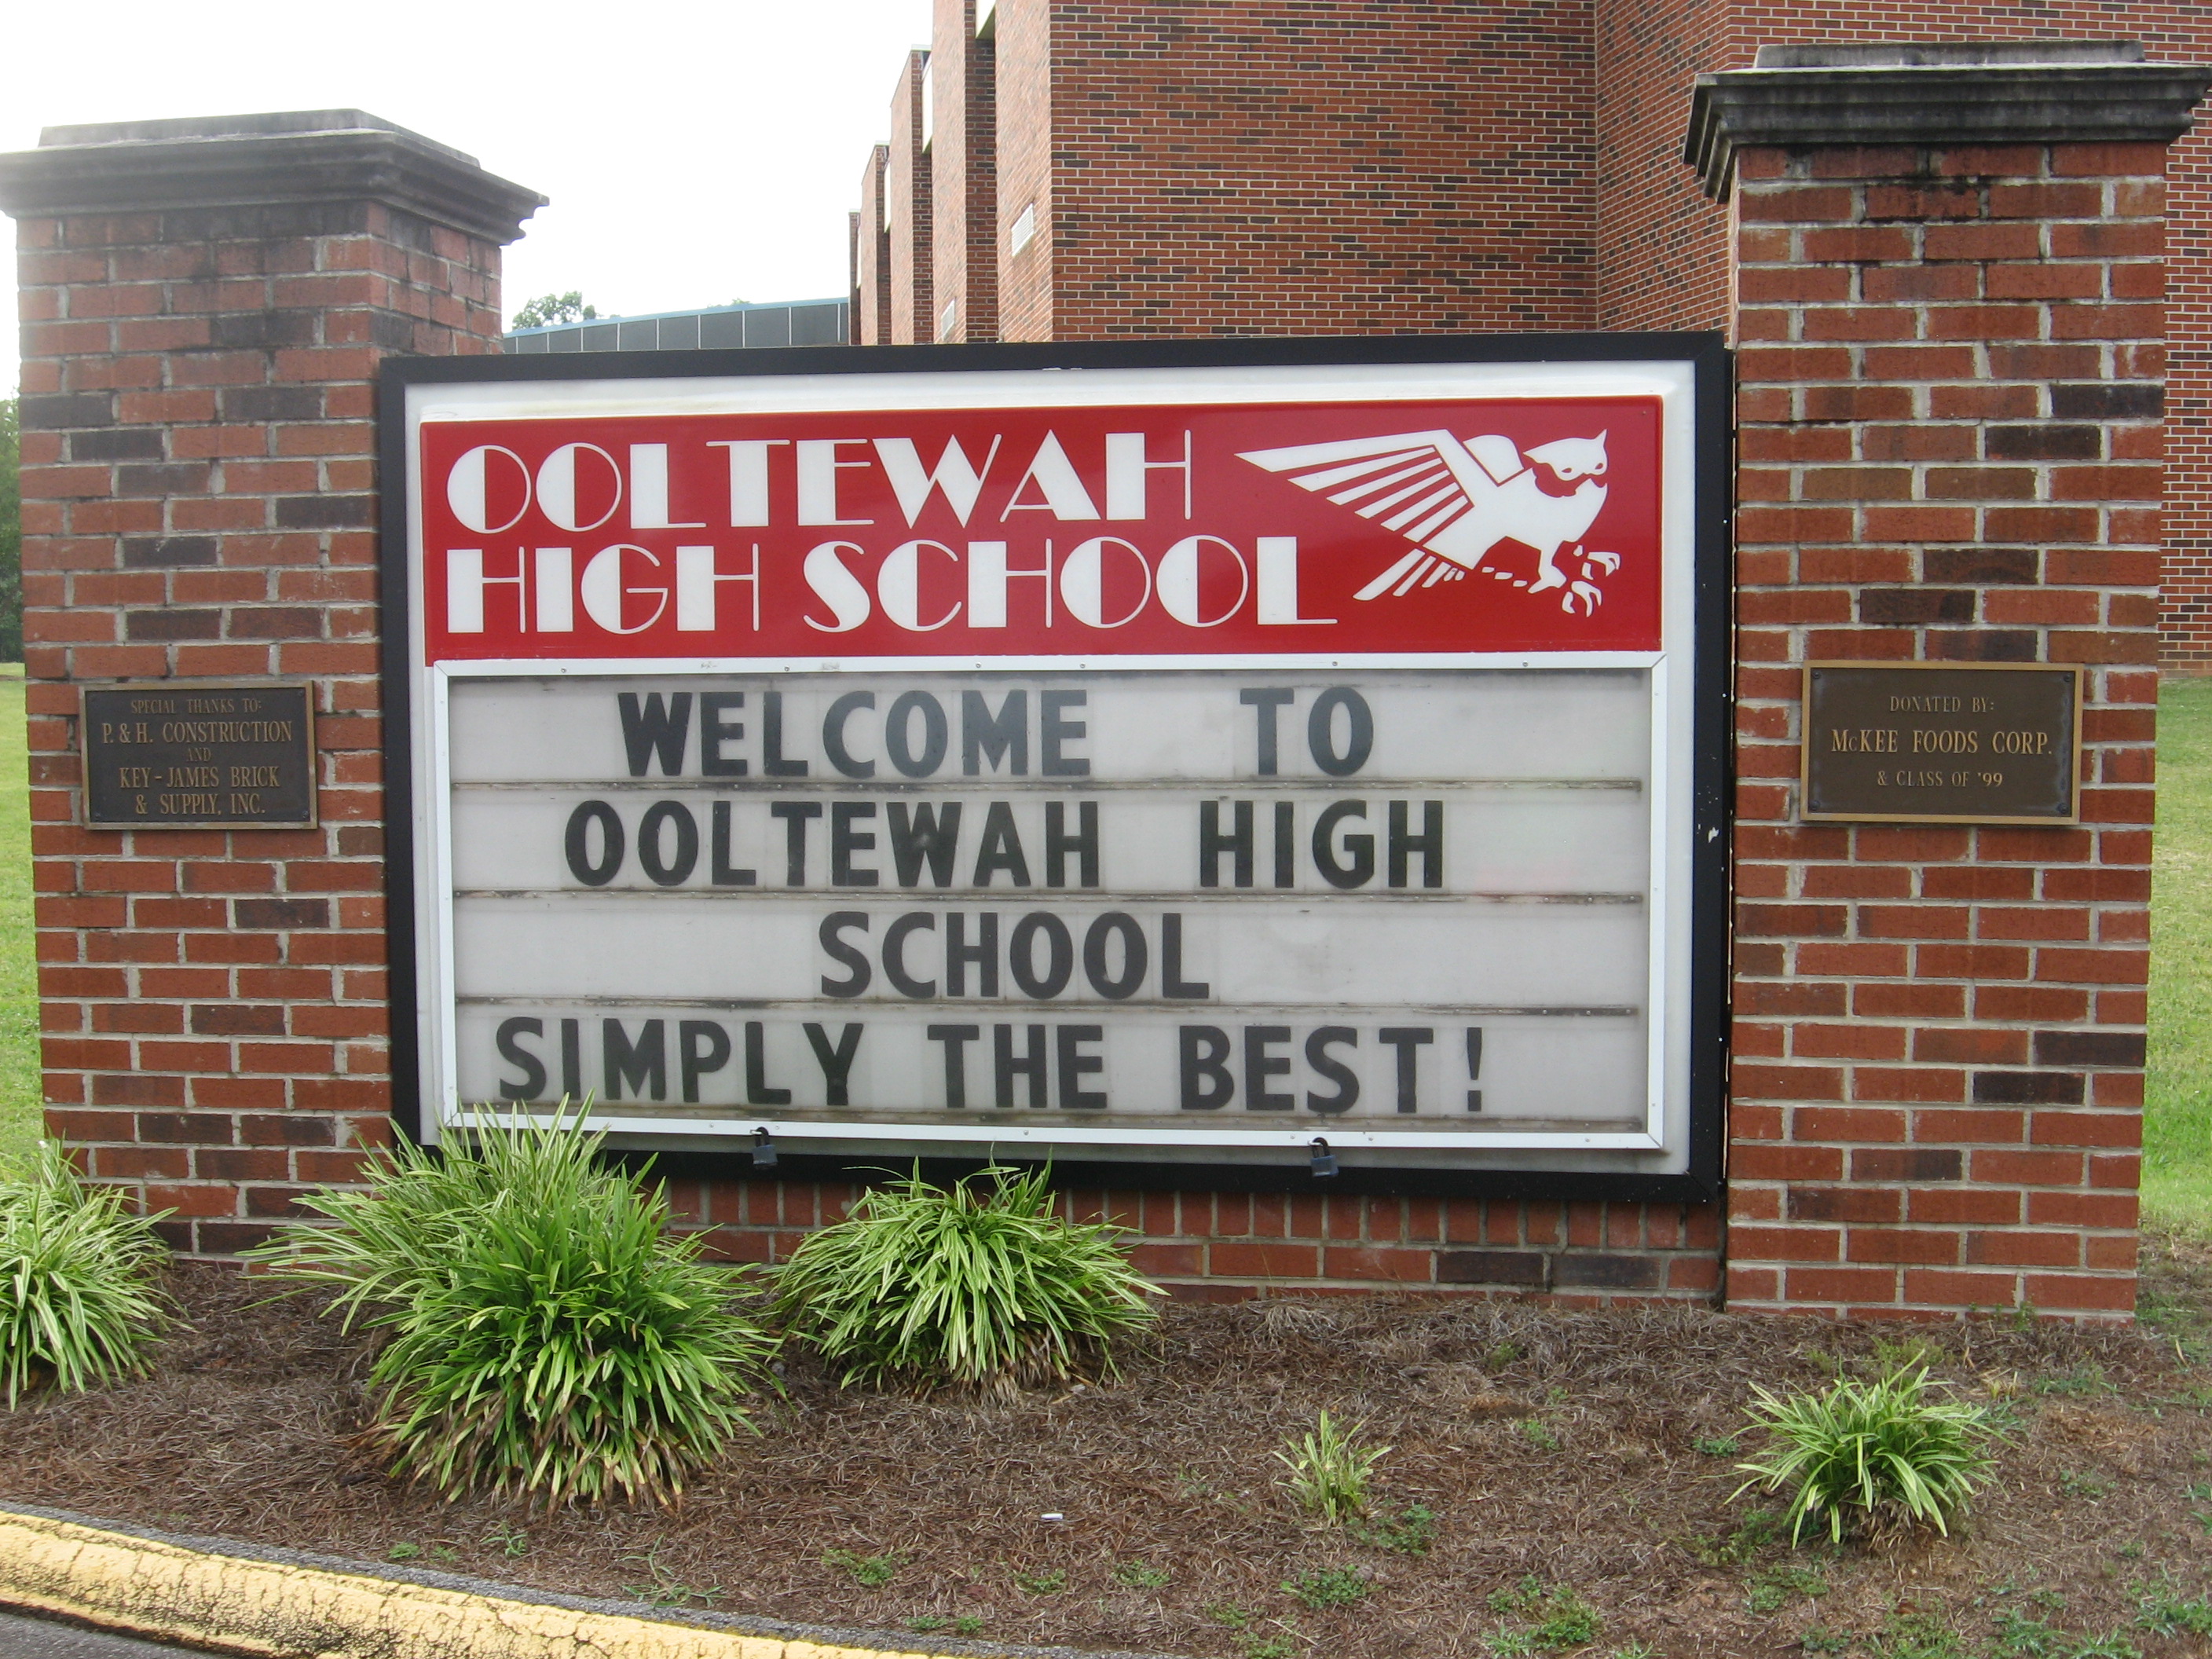 Ooltewah High School, Ooltewah High School basketball rape case, Ooltewah High School basketball hazing case